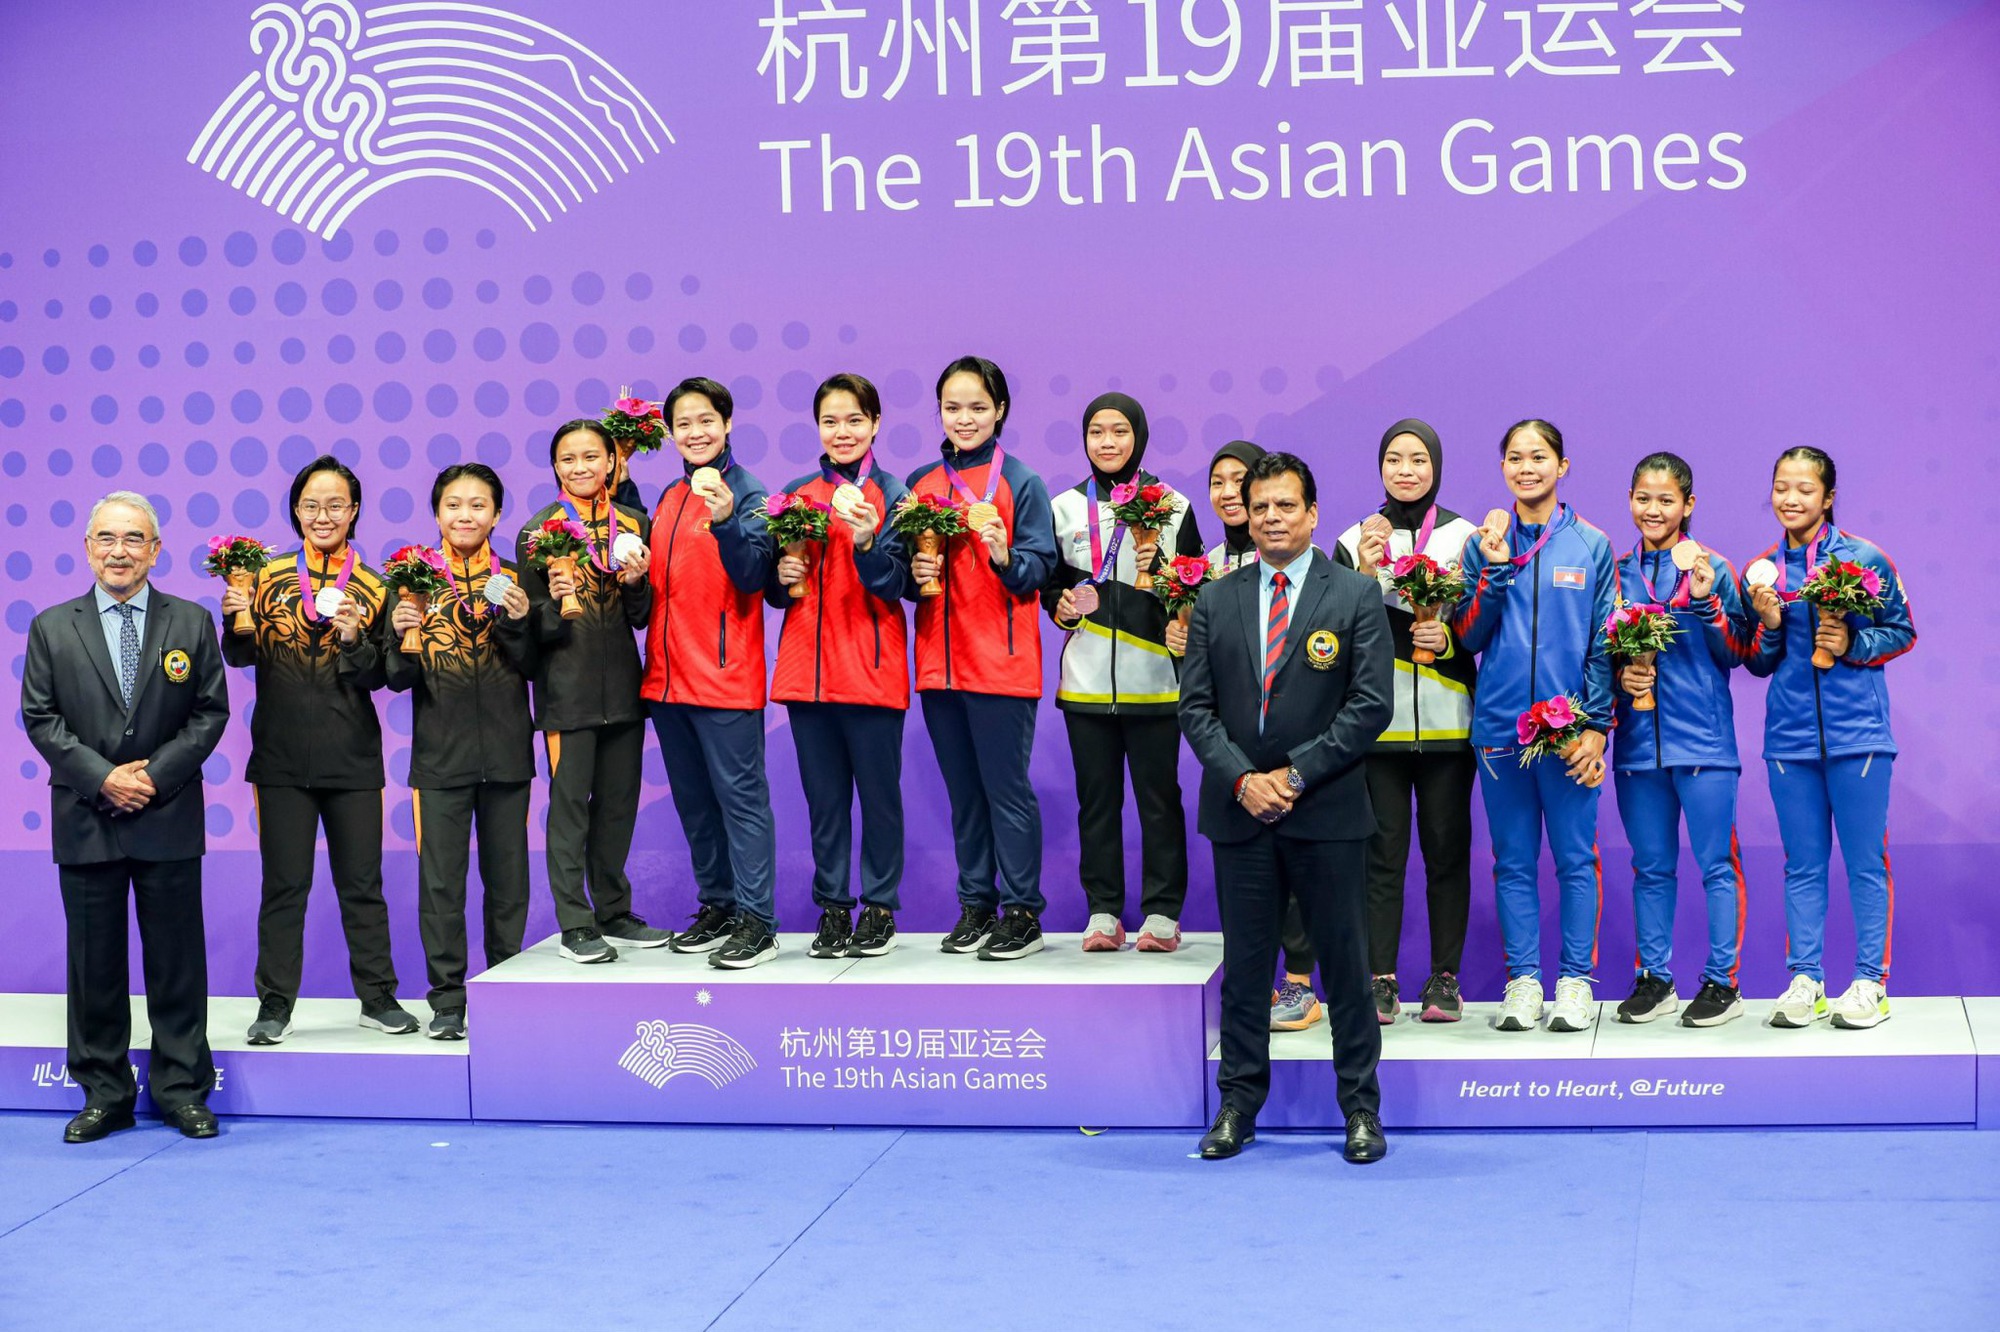 Karate xuất sắc mang về HCV thứ ba cho thể thao Việt Nam tại ASIAD 19 - Ảnh 2.